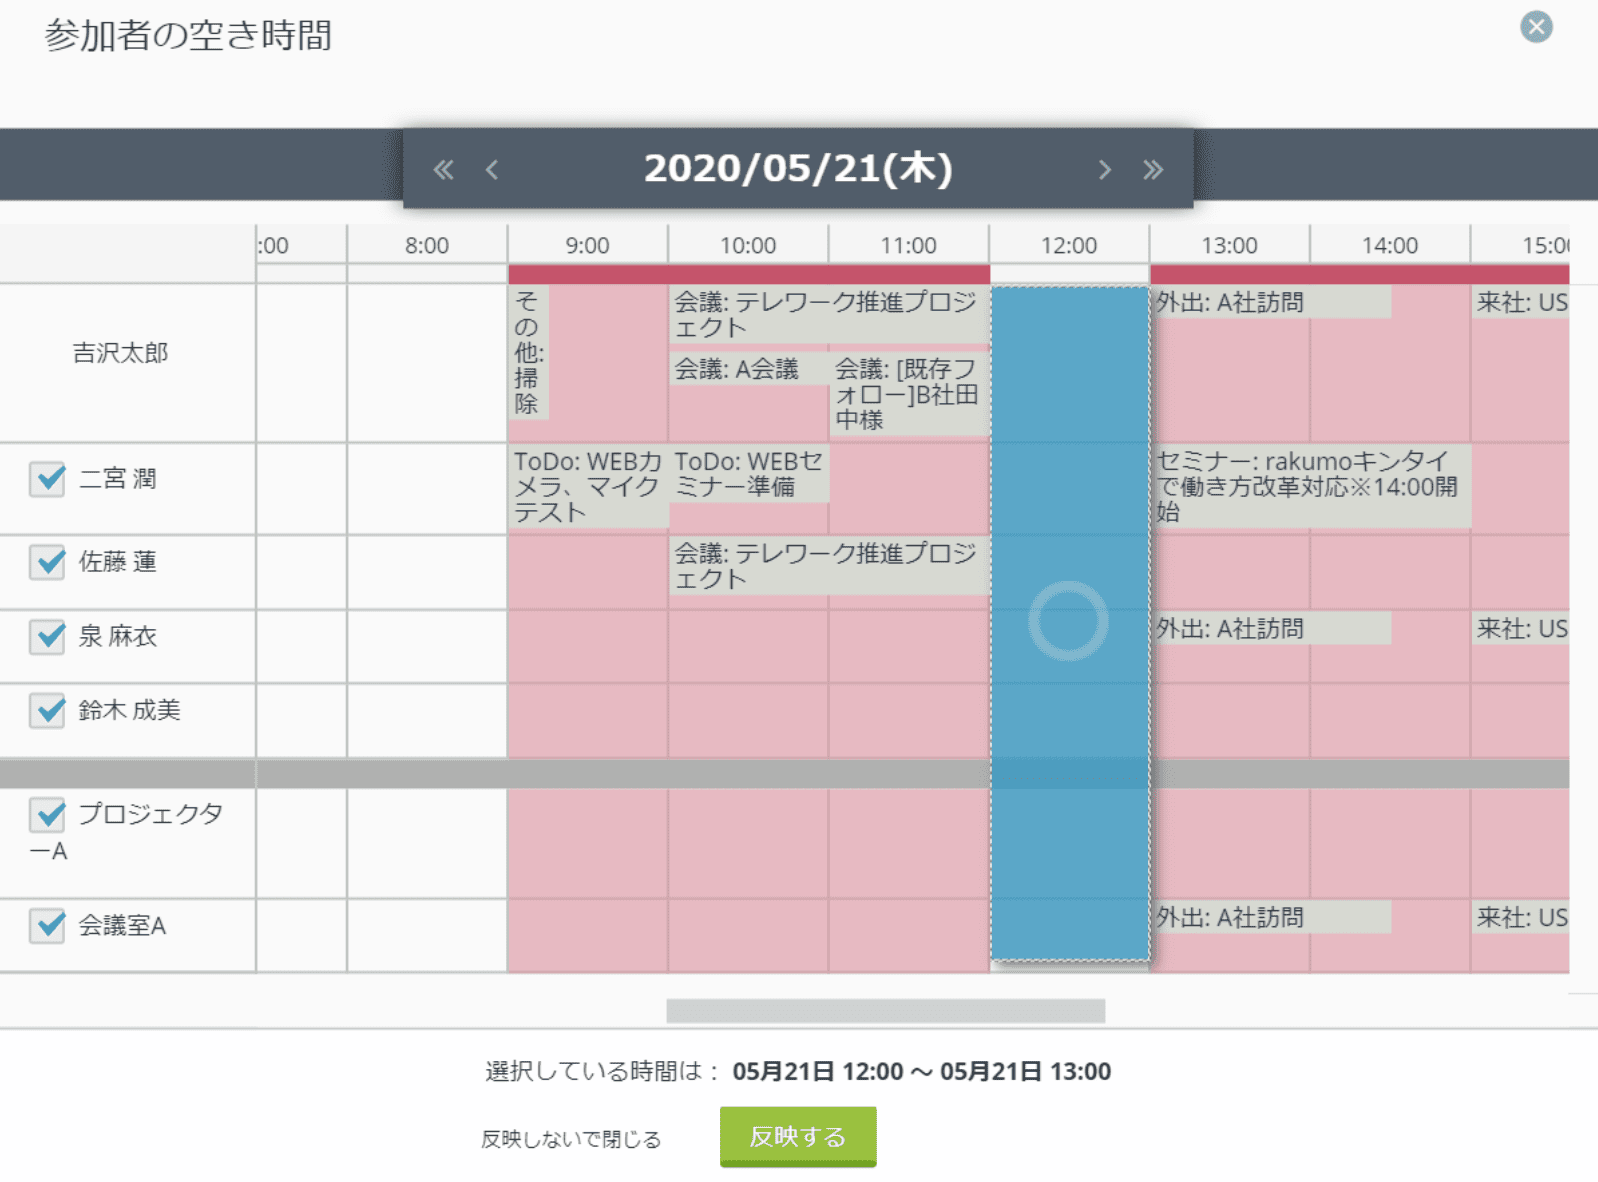 rakumo カレンダー 空き時間確認画面でスライダーを動かし、全員の予定が空いていれば「○」、空いてなければ「△」と表示